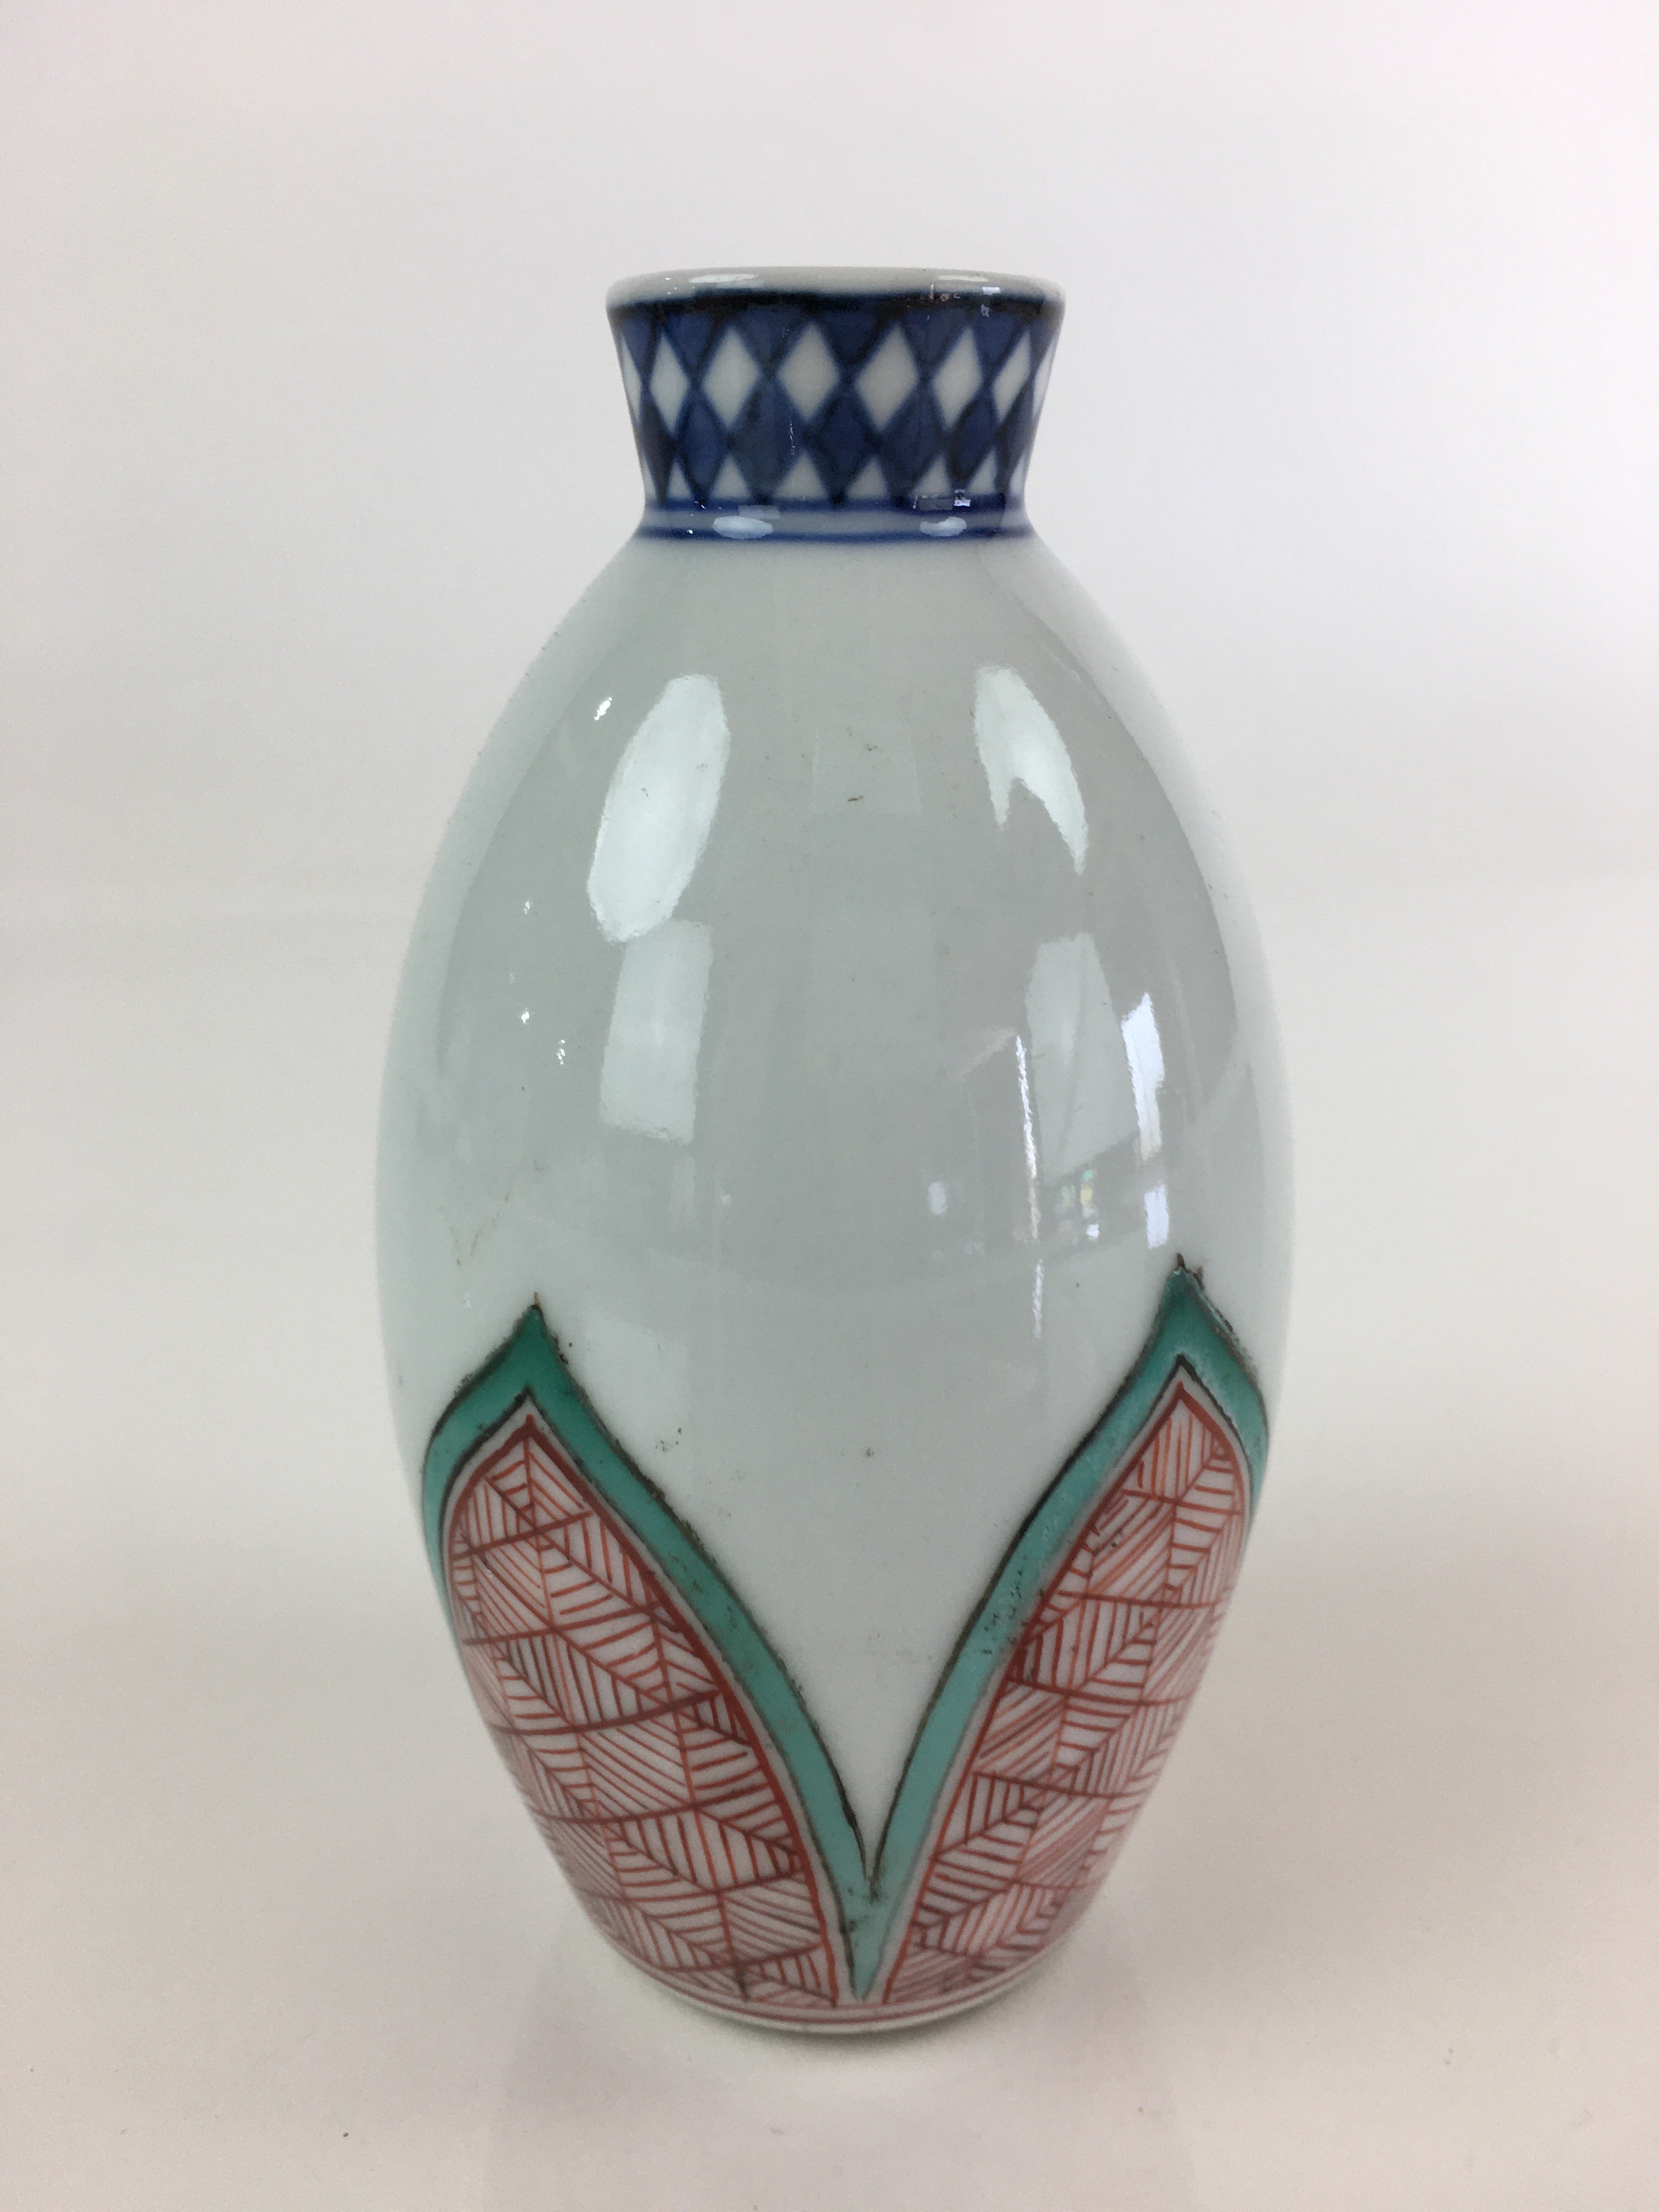 Japanese Porcelain Sake Bottle Vtg Tokkuri White Bottle Red Green Flower TS446